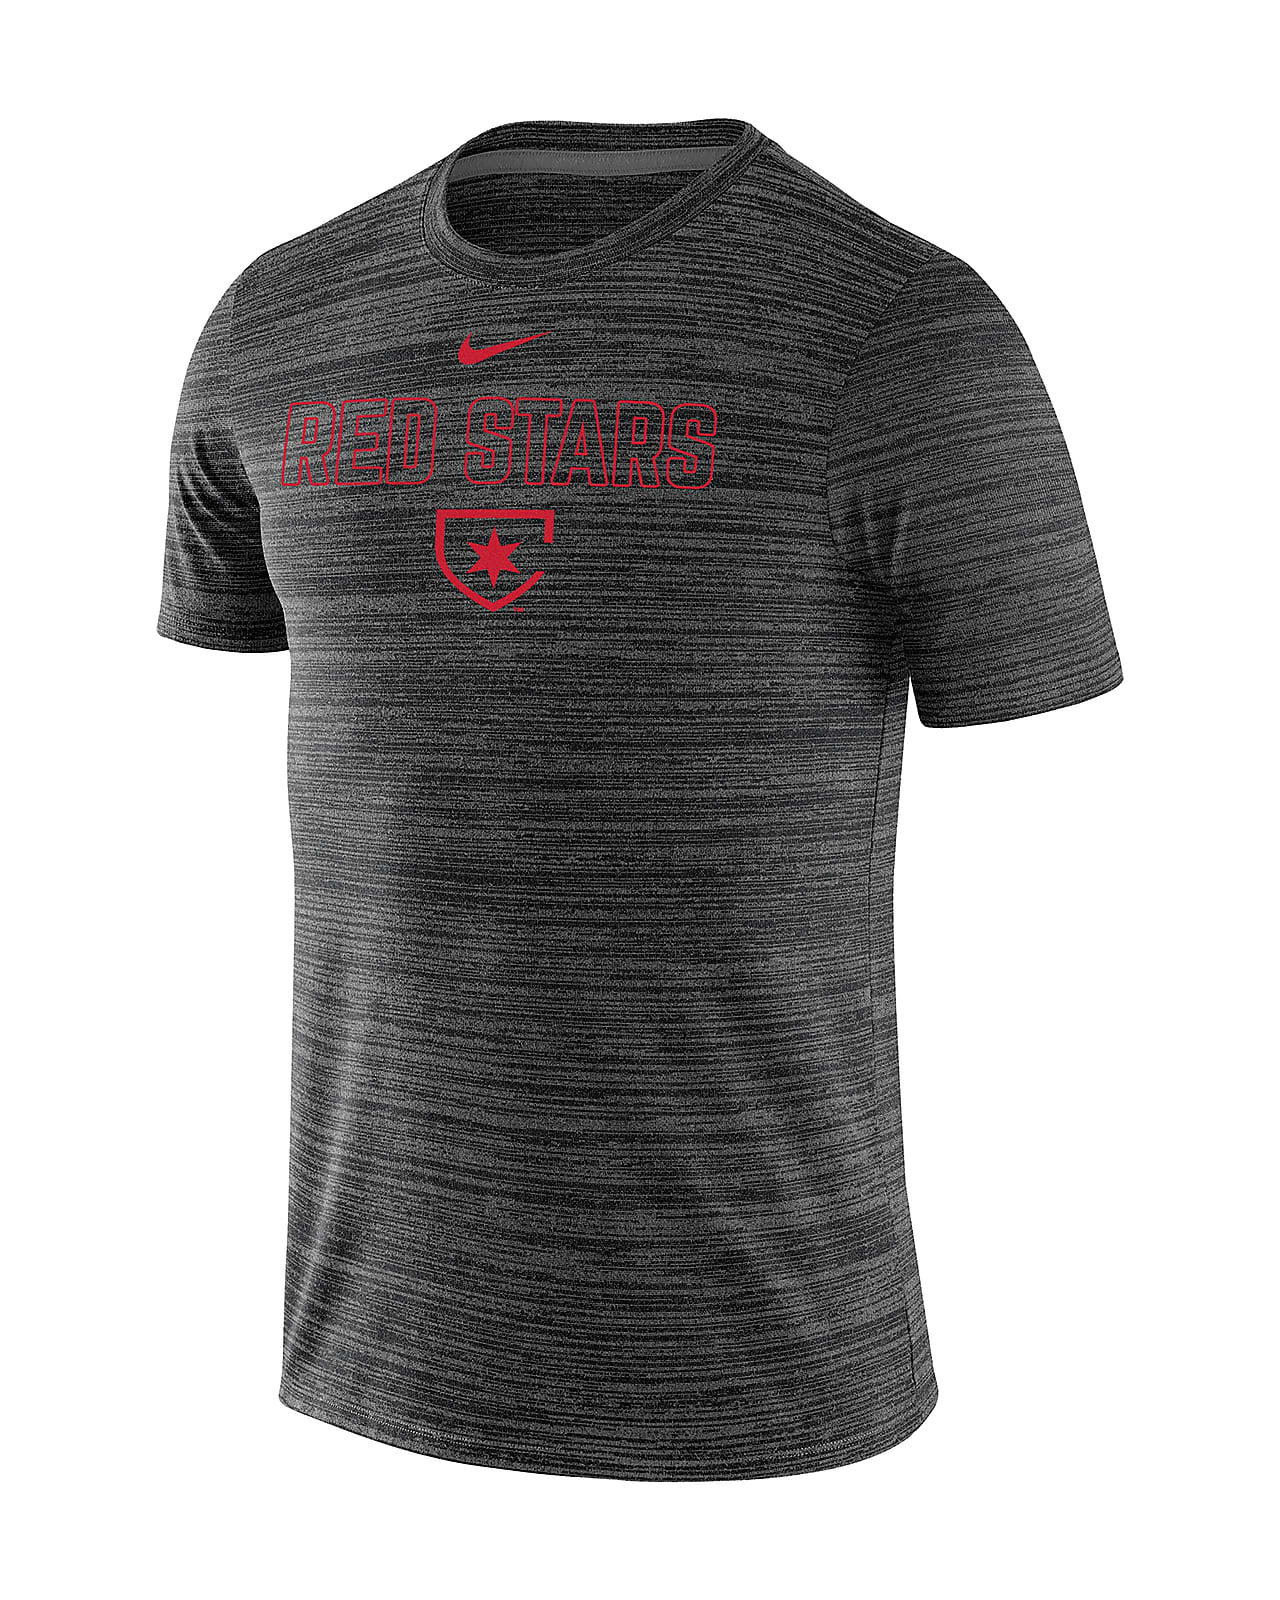 Chicago Red Stars Velocity Legend Men's Nike Soccer T-Shirt